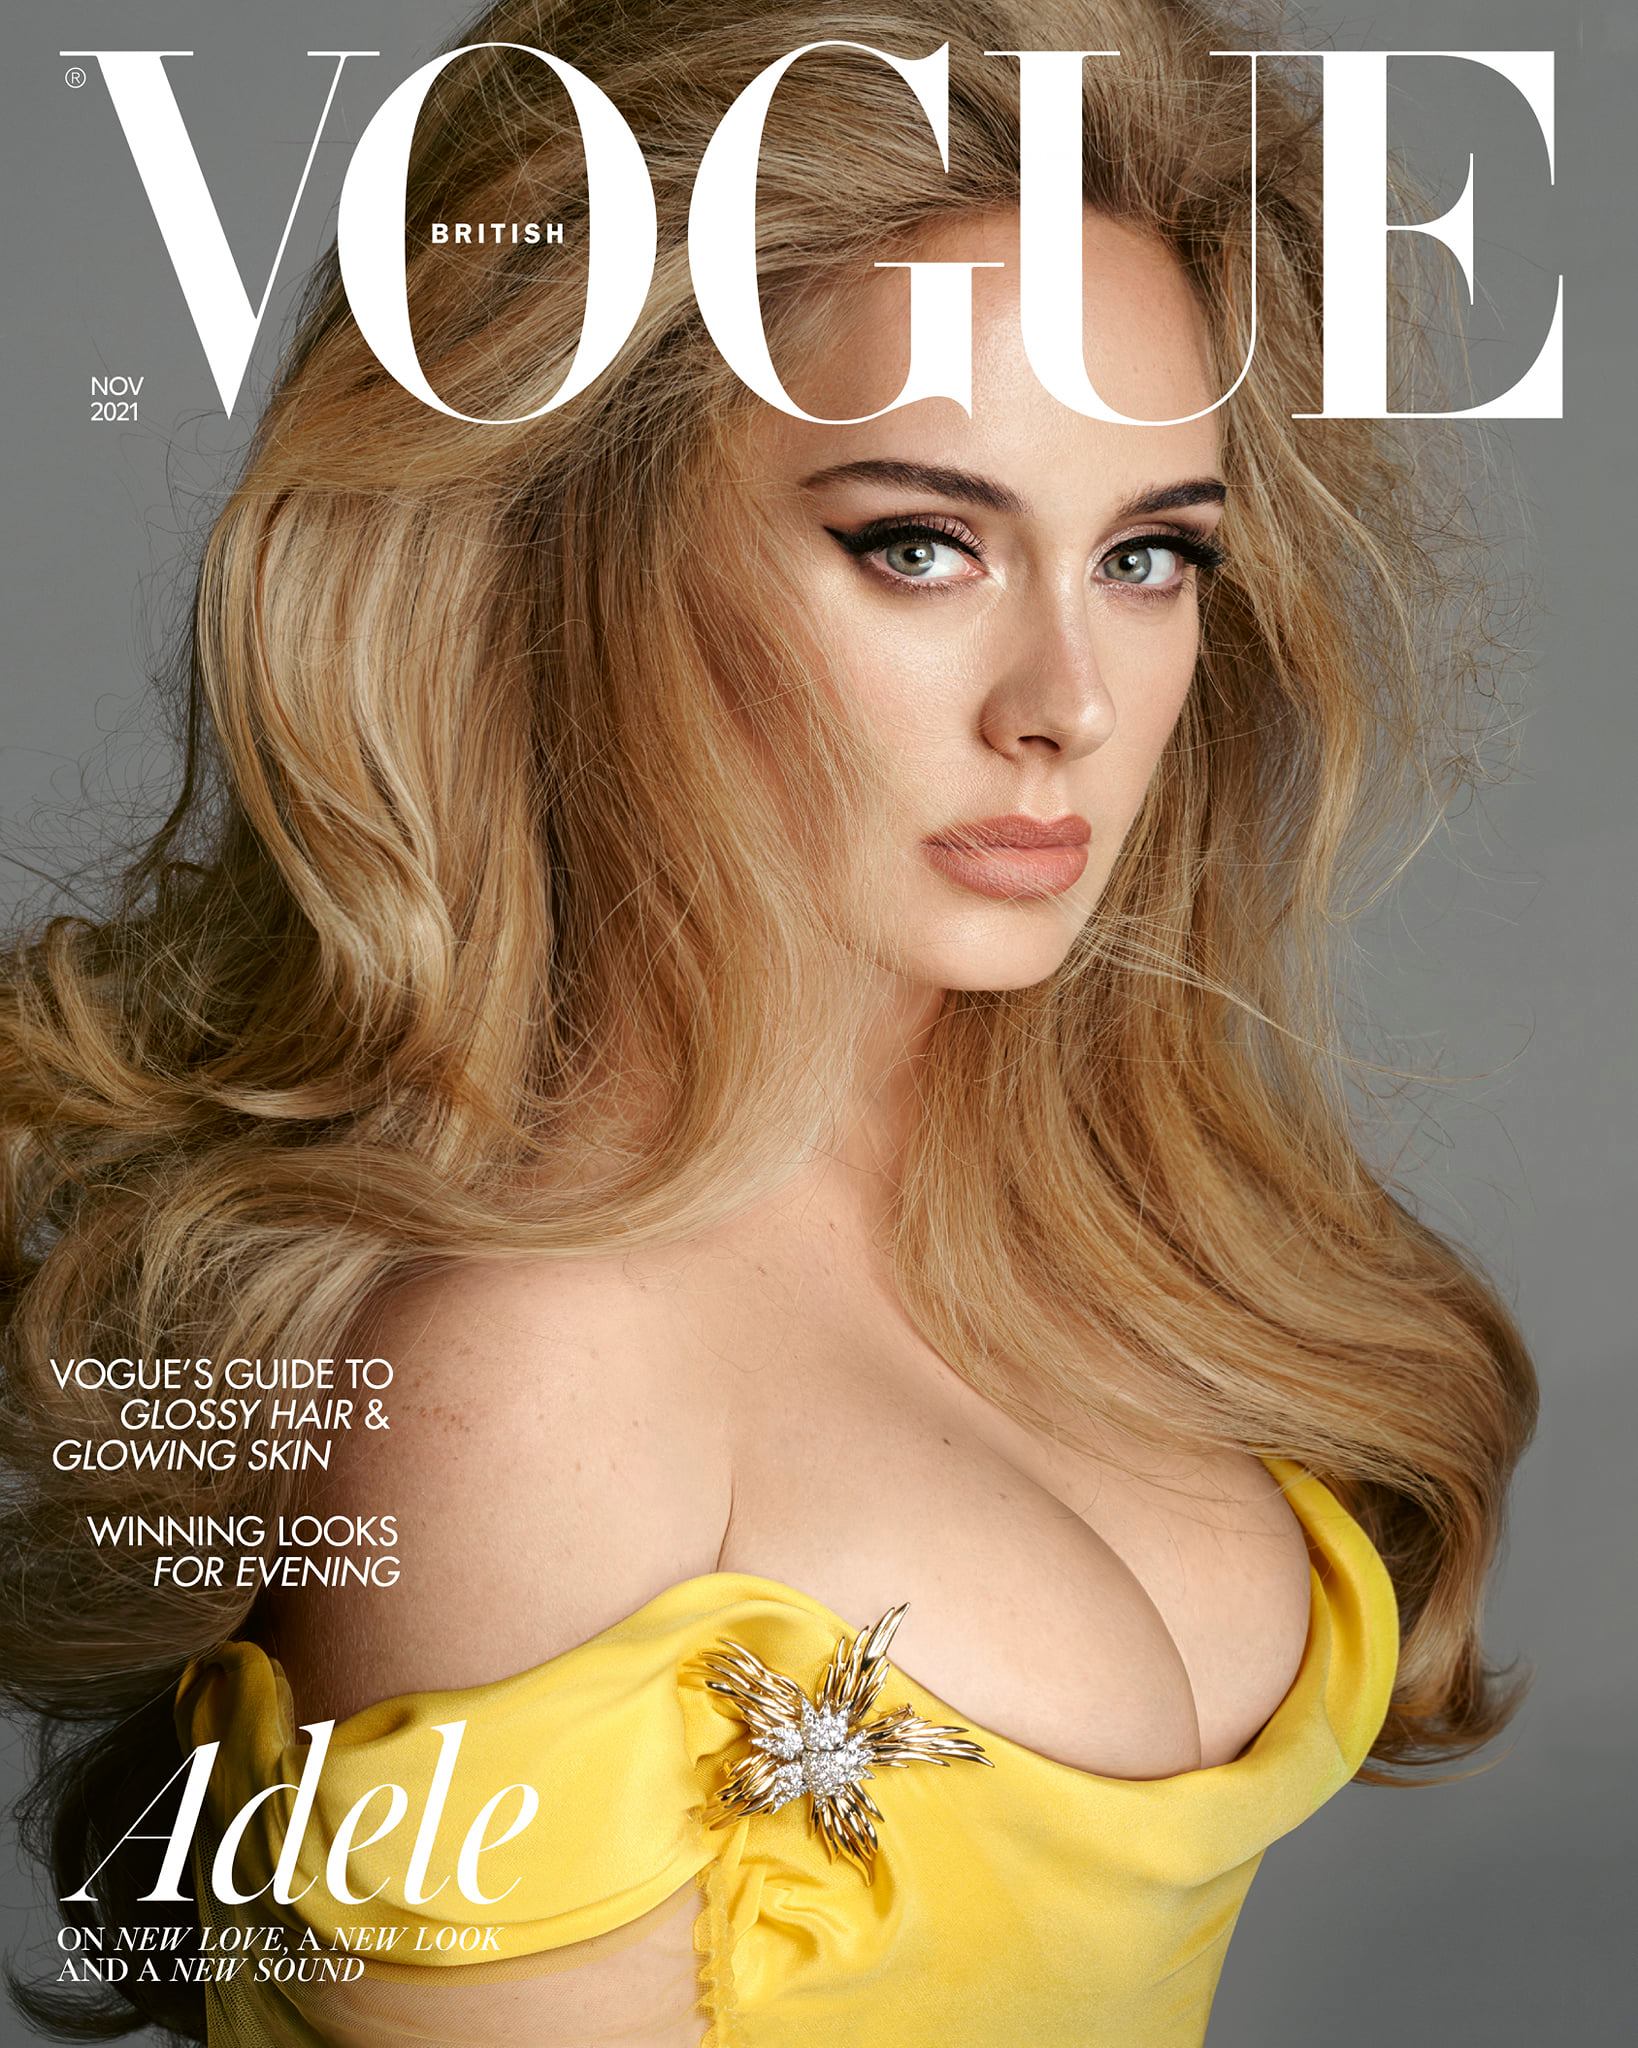 Adele, renacida: el icono británico se sincera sobre el divorcio, la imagen corporal, el romance y su récord de “auto-redención”